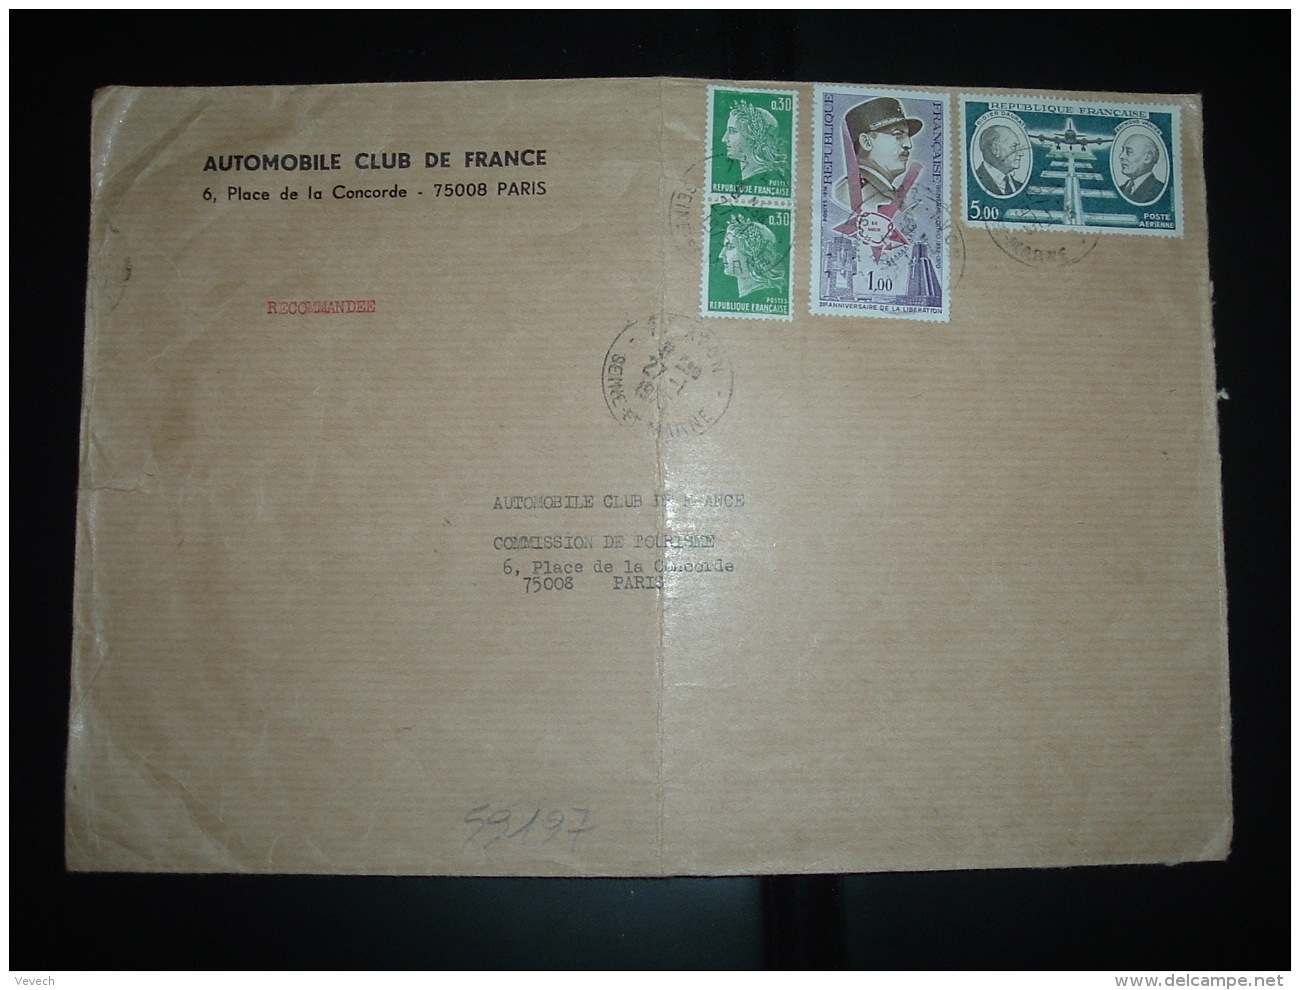 LR TP DAURAT VANIER 5,00 + LIBERATION 1,00 + MARIANNE DE CHEFFER 0,30  Paire OBL.27-1-1975 AVON (77) AUTOMOBILE CLUB DE - Postal Rates